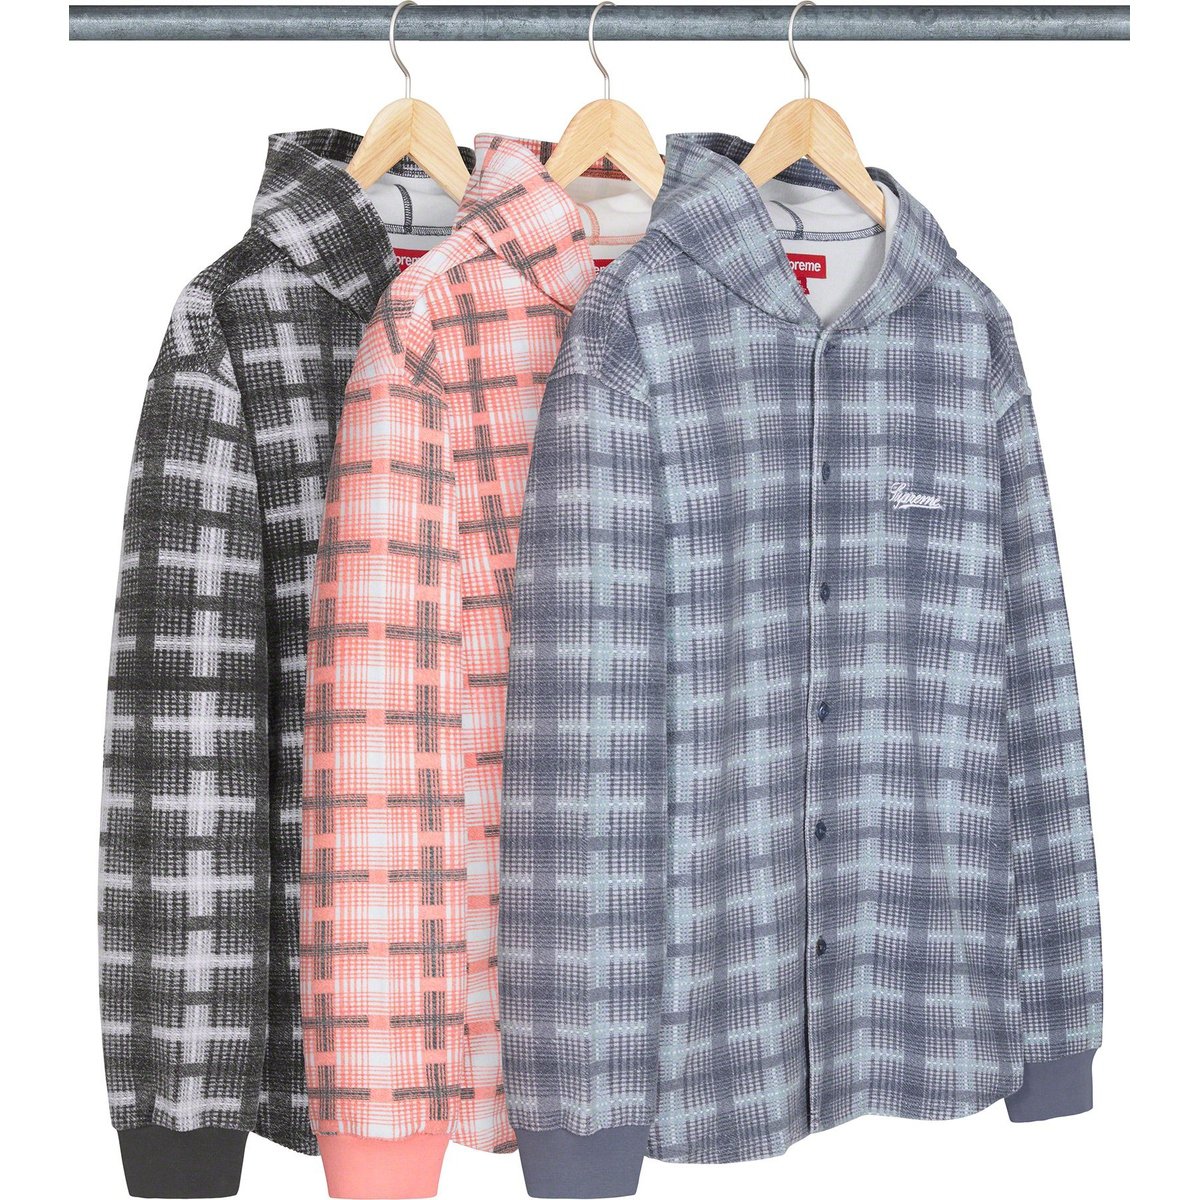 Supreme Hooded Plaid Knit Shirt for fall winter 23 season